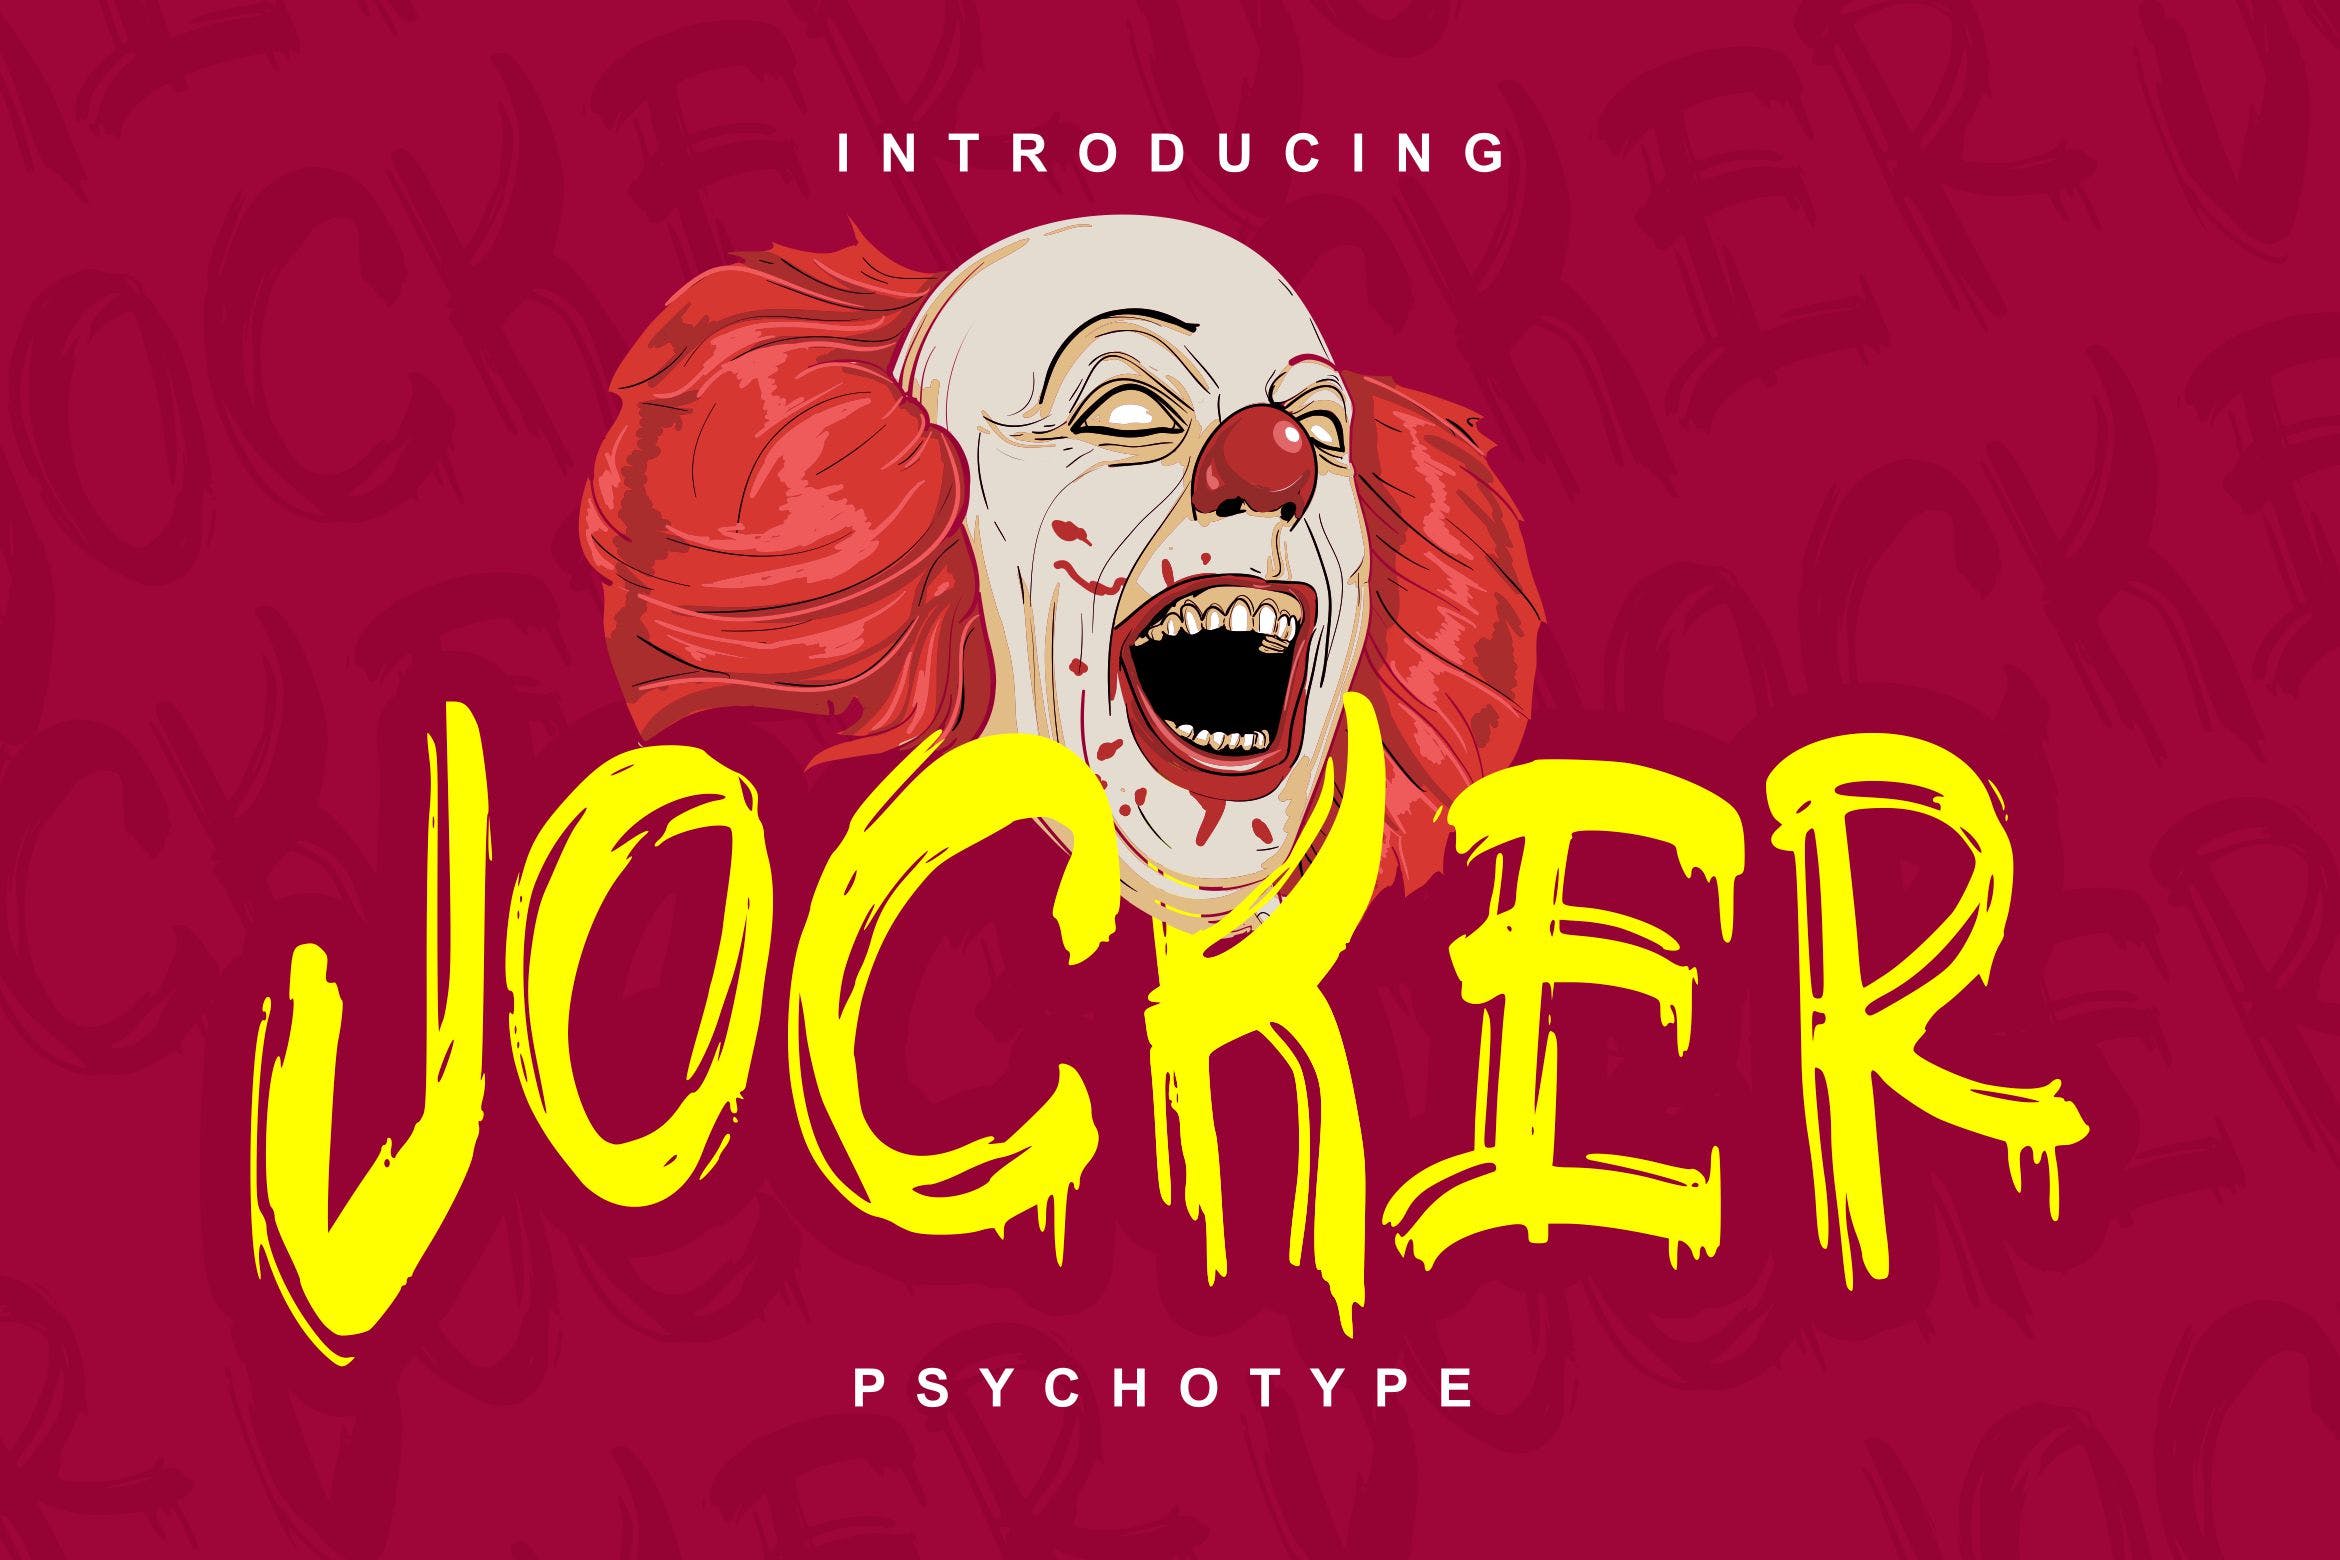 极具个性的英文笔刷装饰字体16素材精选 Jocker | Psychotype Font Theme插图